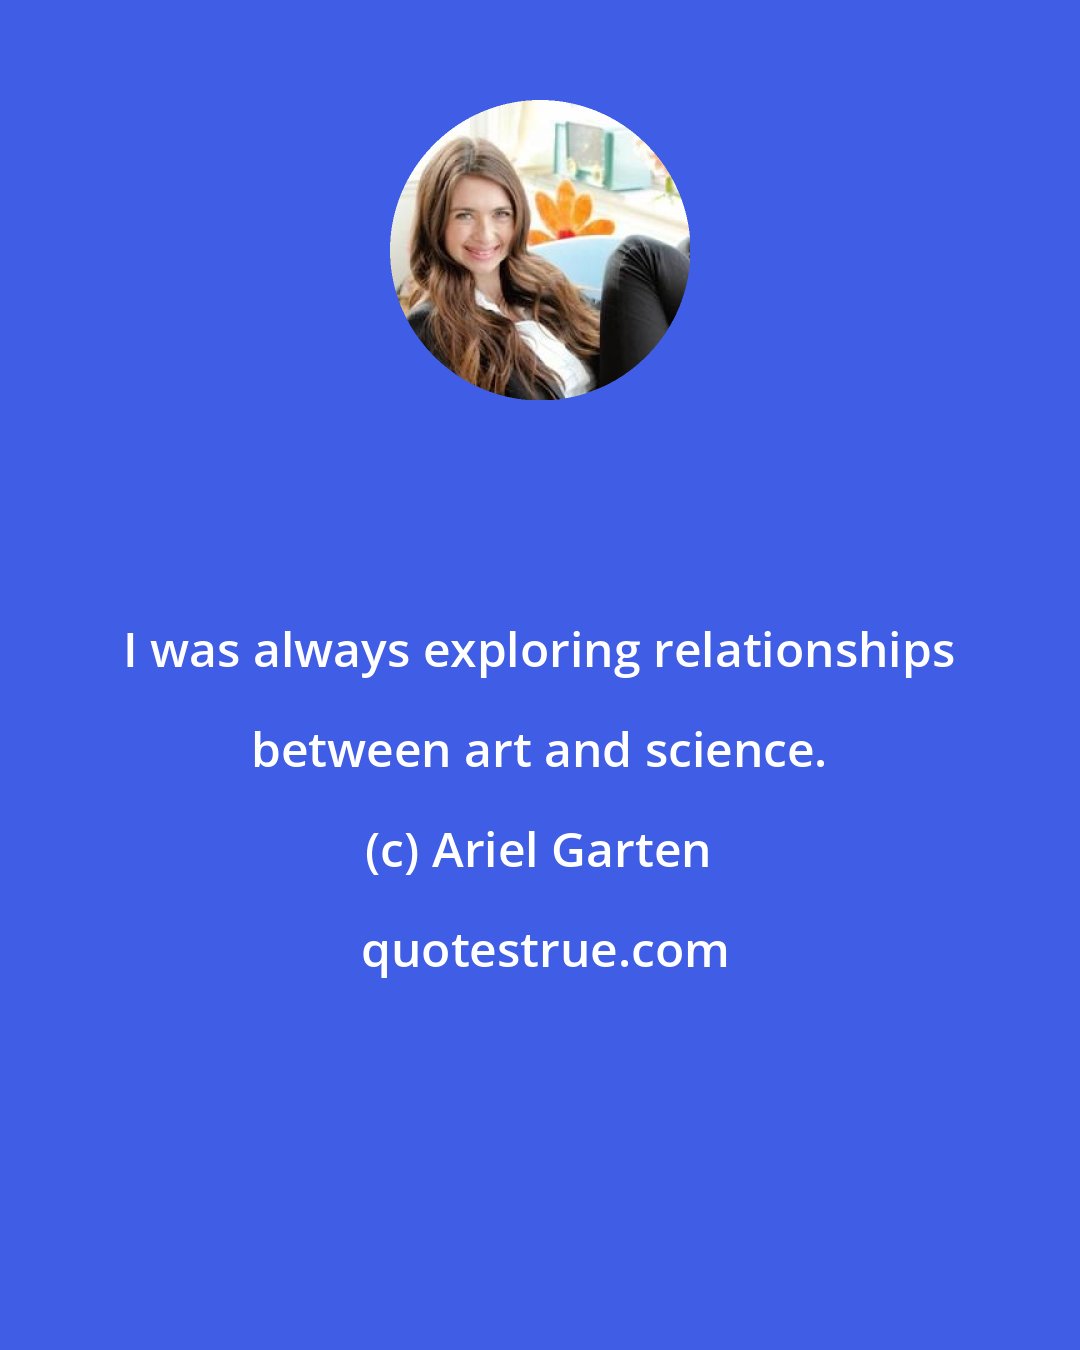 Ariel Garten: I was always exploring relationships between art and science.